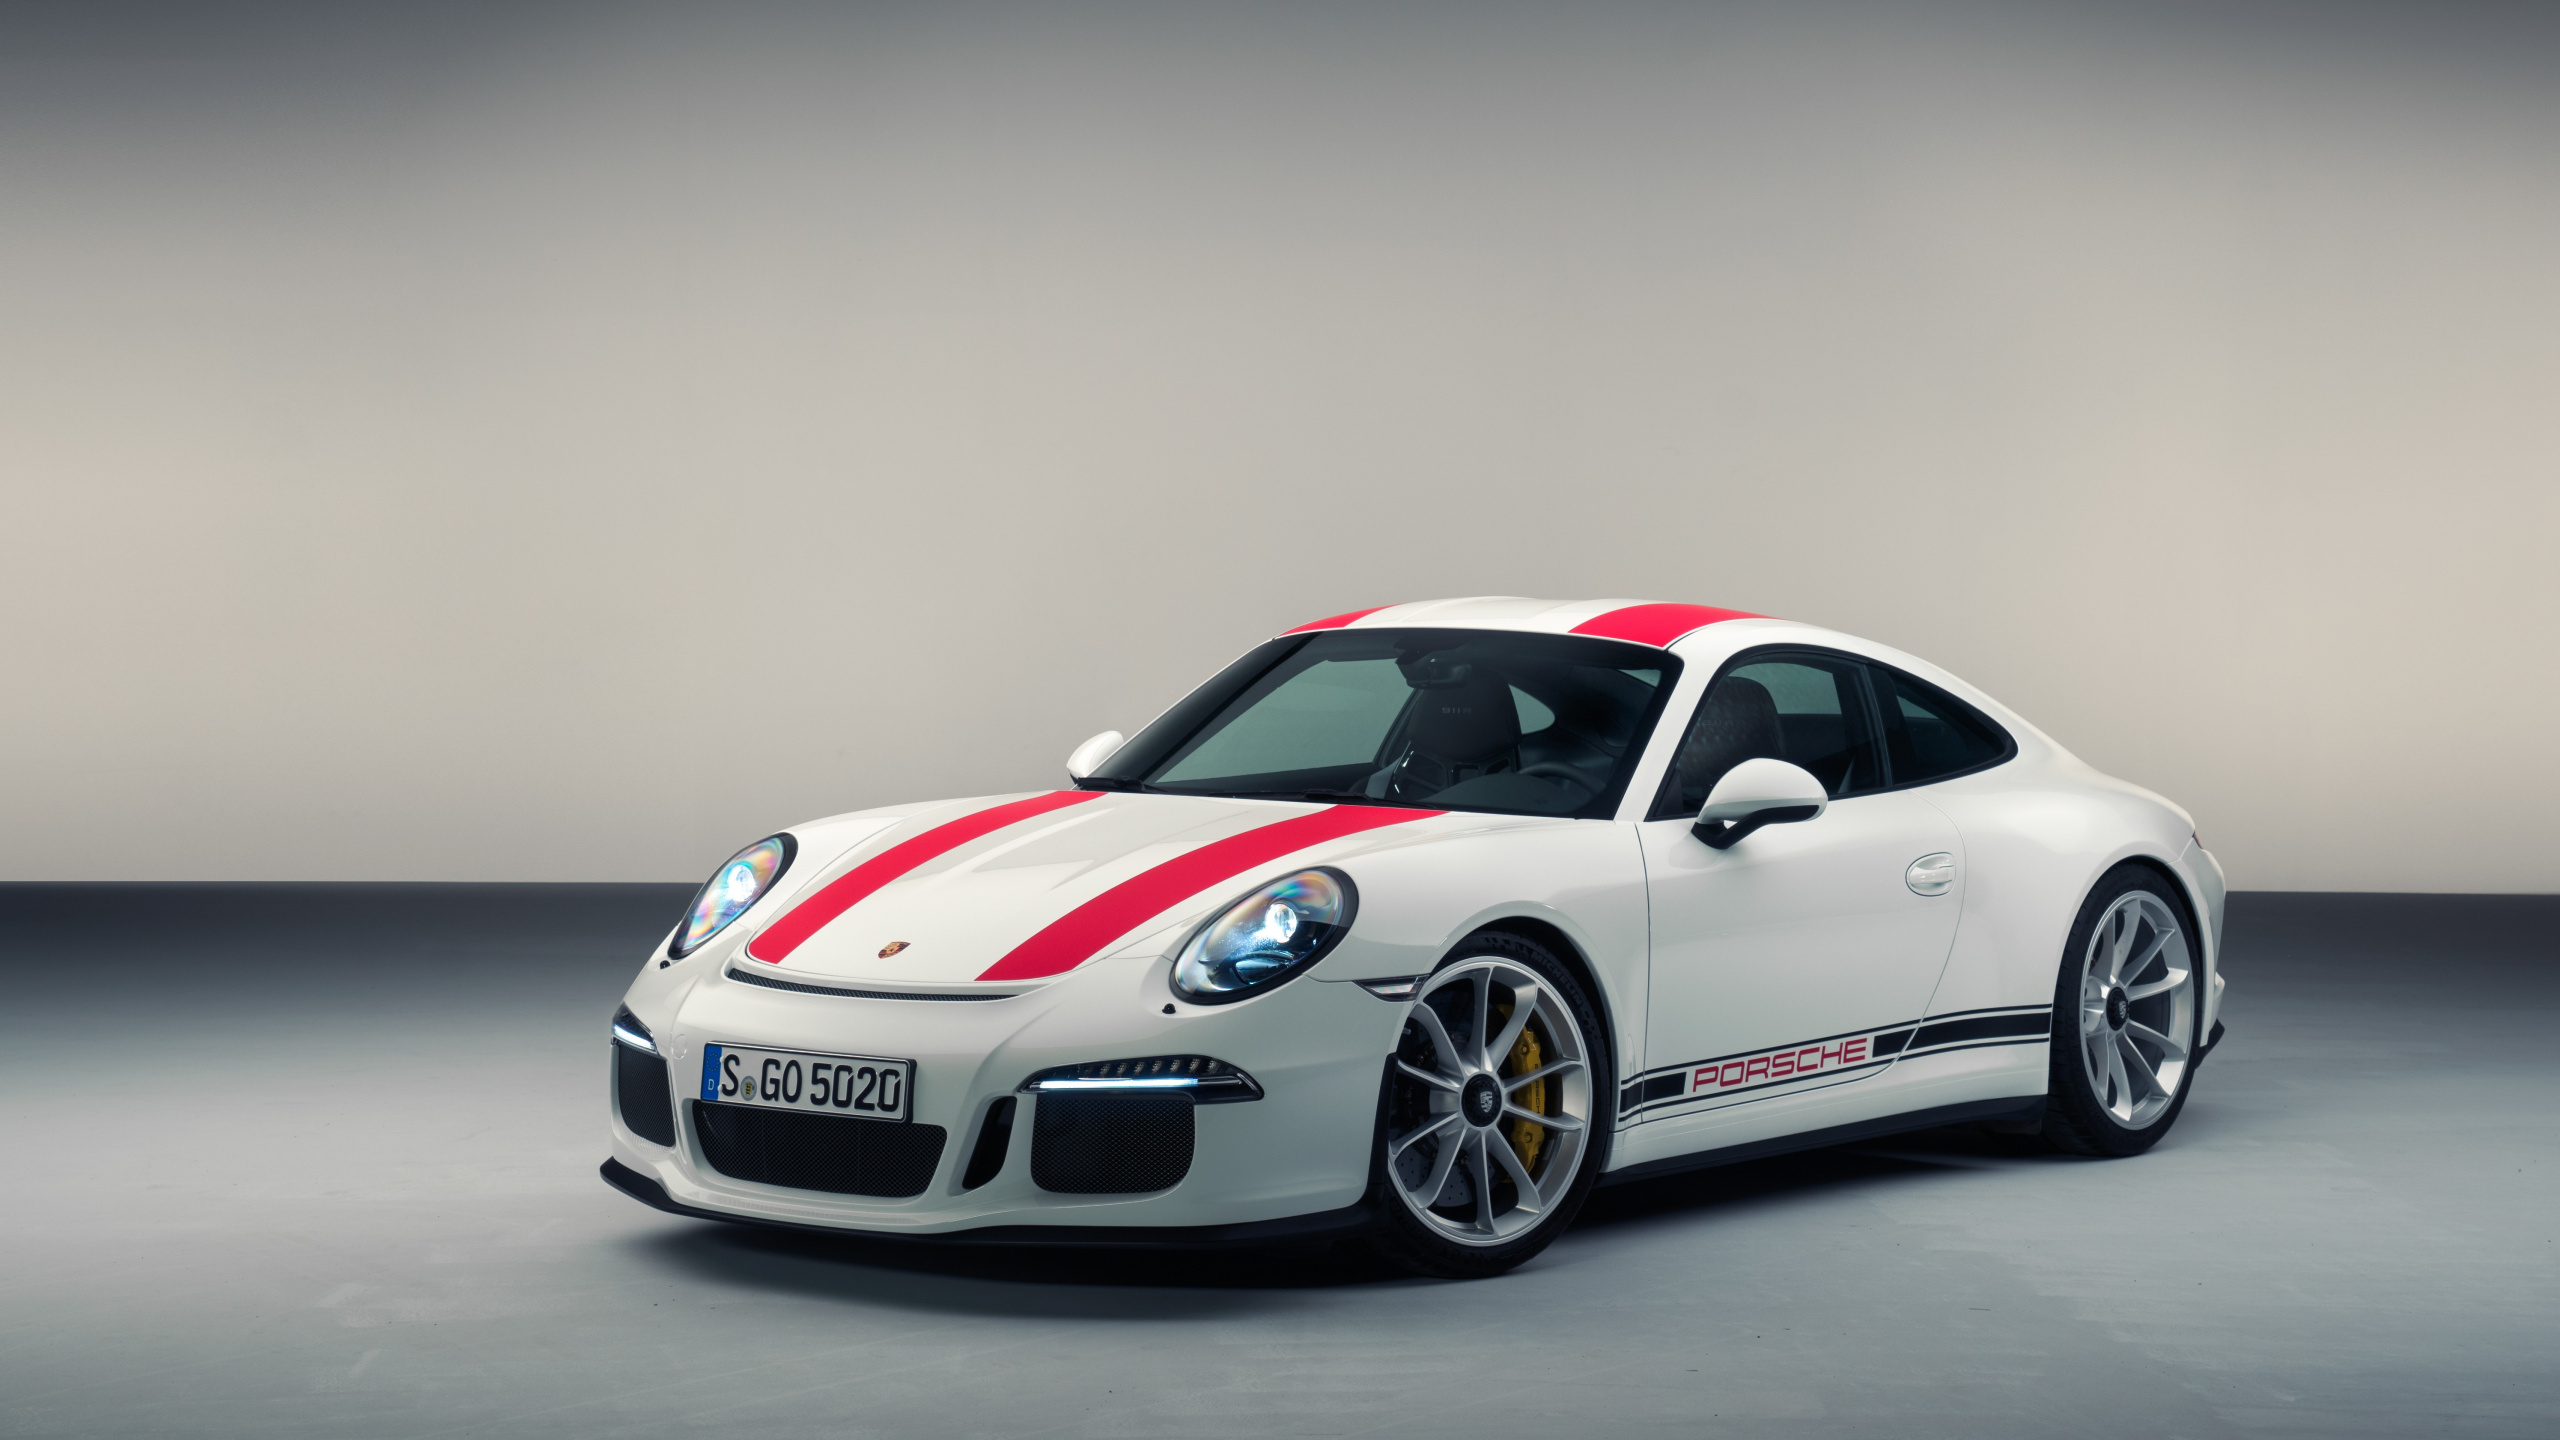 Porsche 911 Blanche et Rouge. Wallpaper in 2560x1440 Resolution